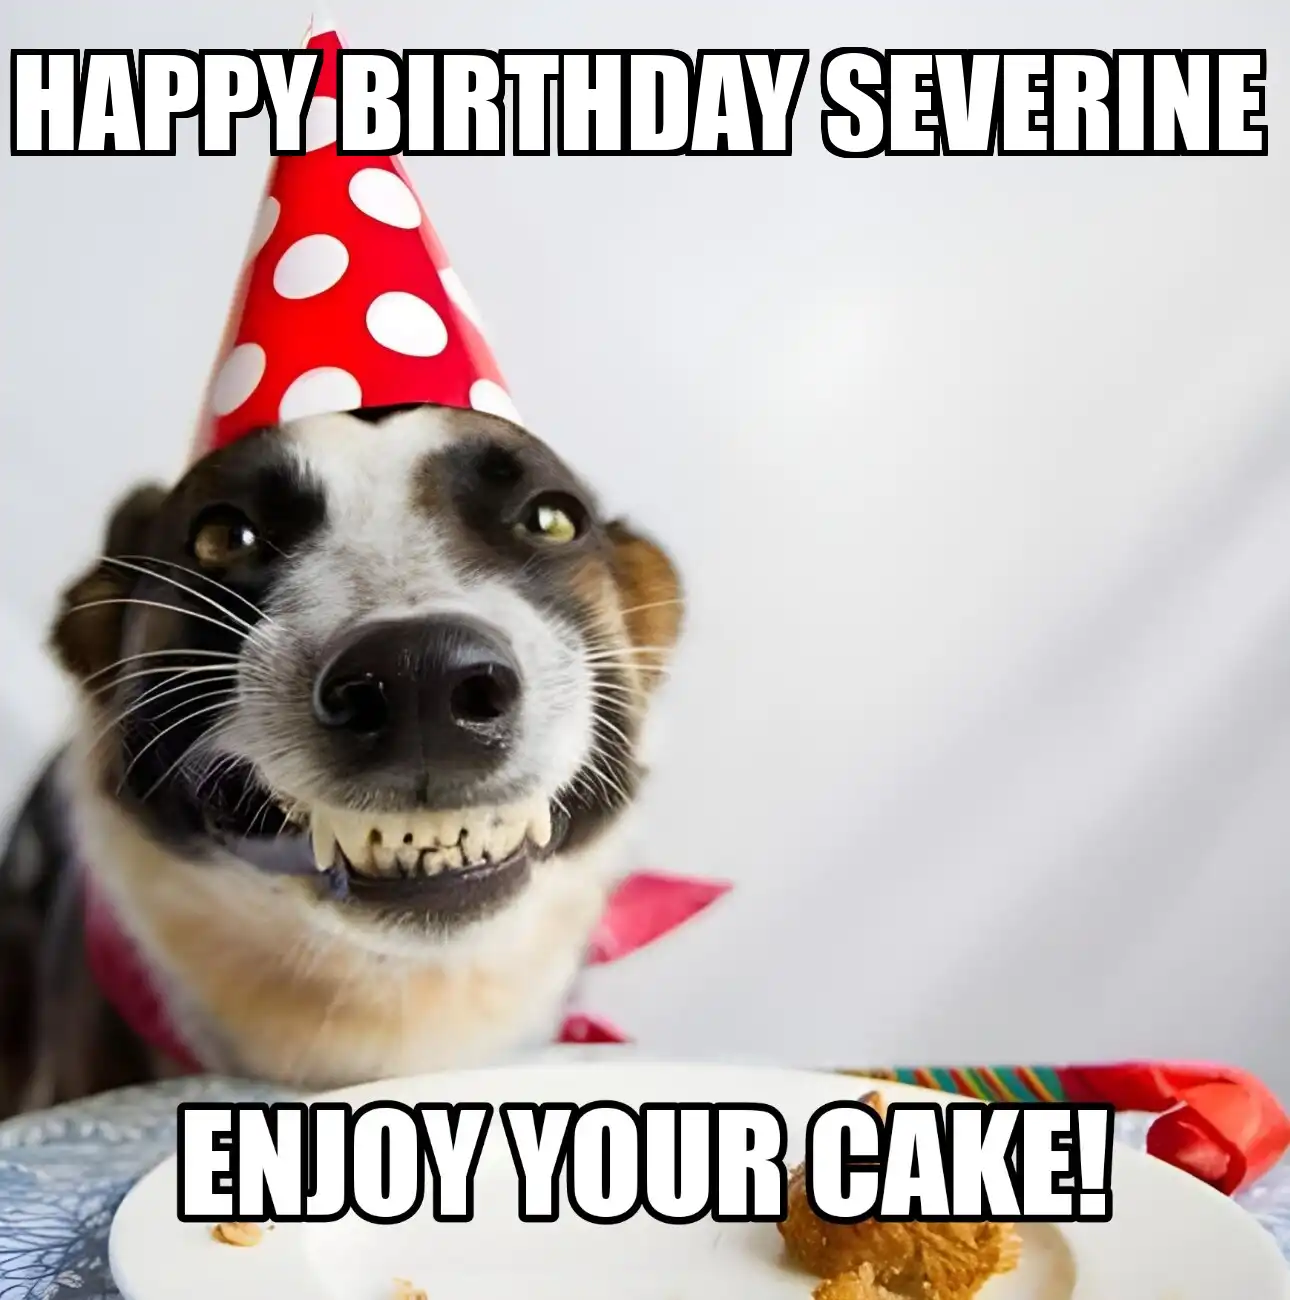 Happy Birthday Severine Enjoy Your Cake Dog Meme